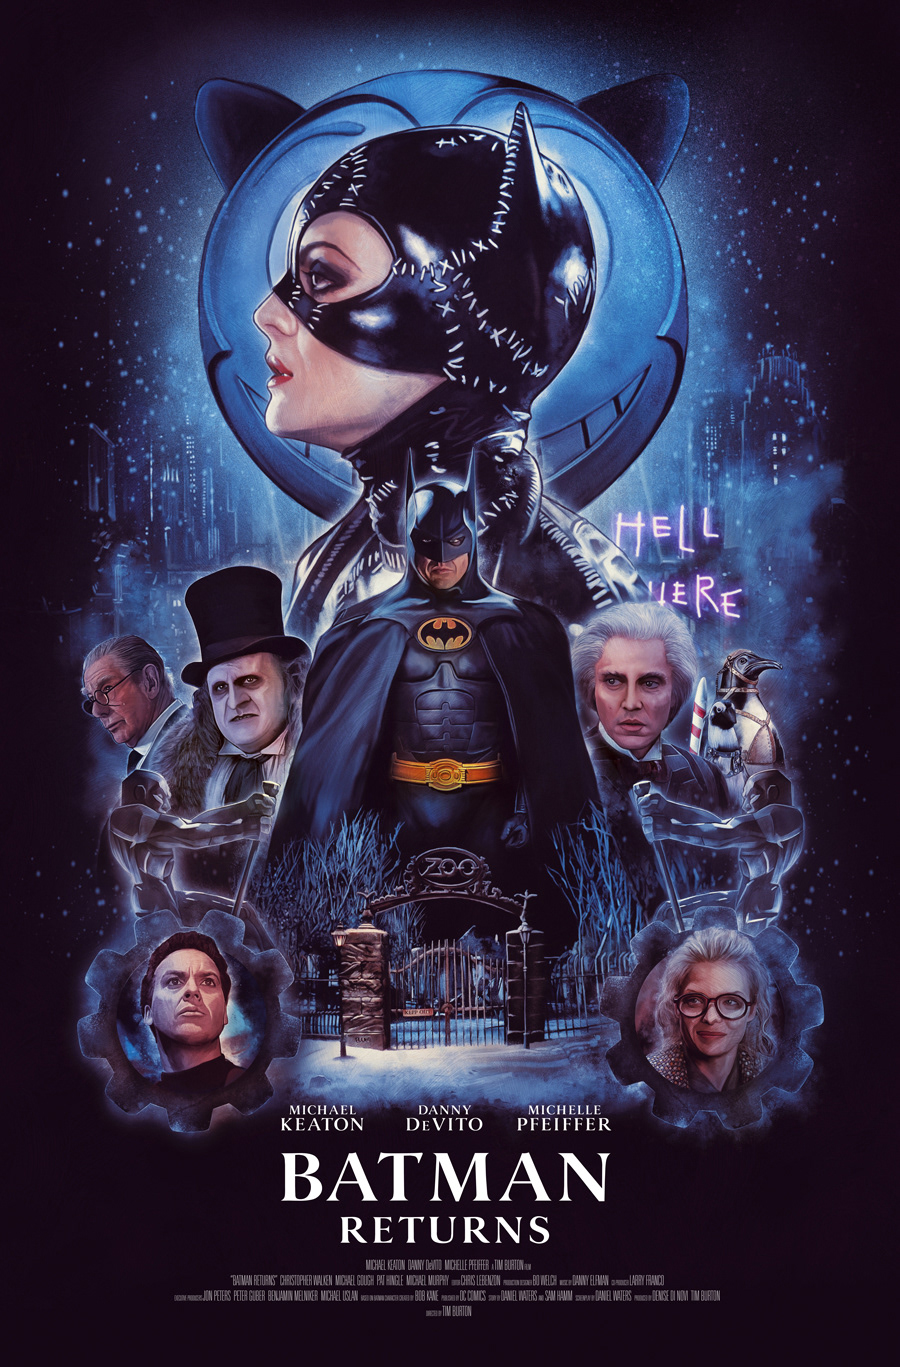 Turksworks Design and Illustration - Batman Returns